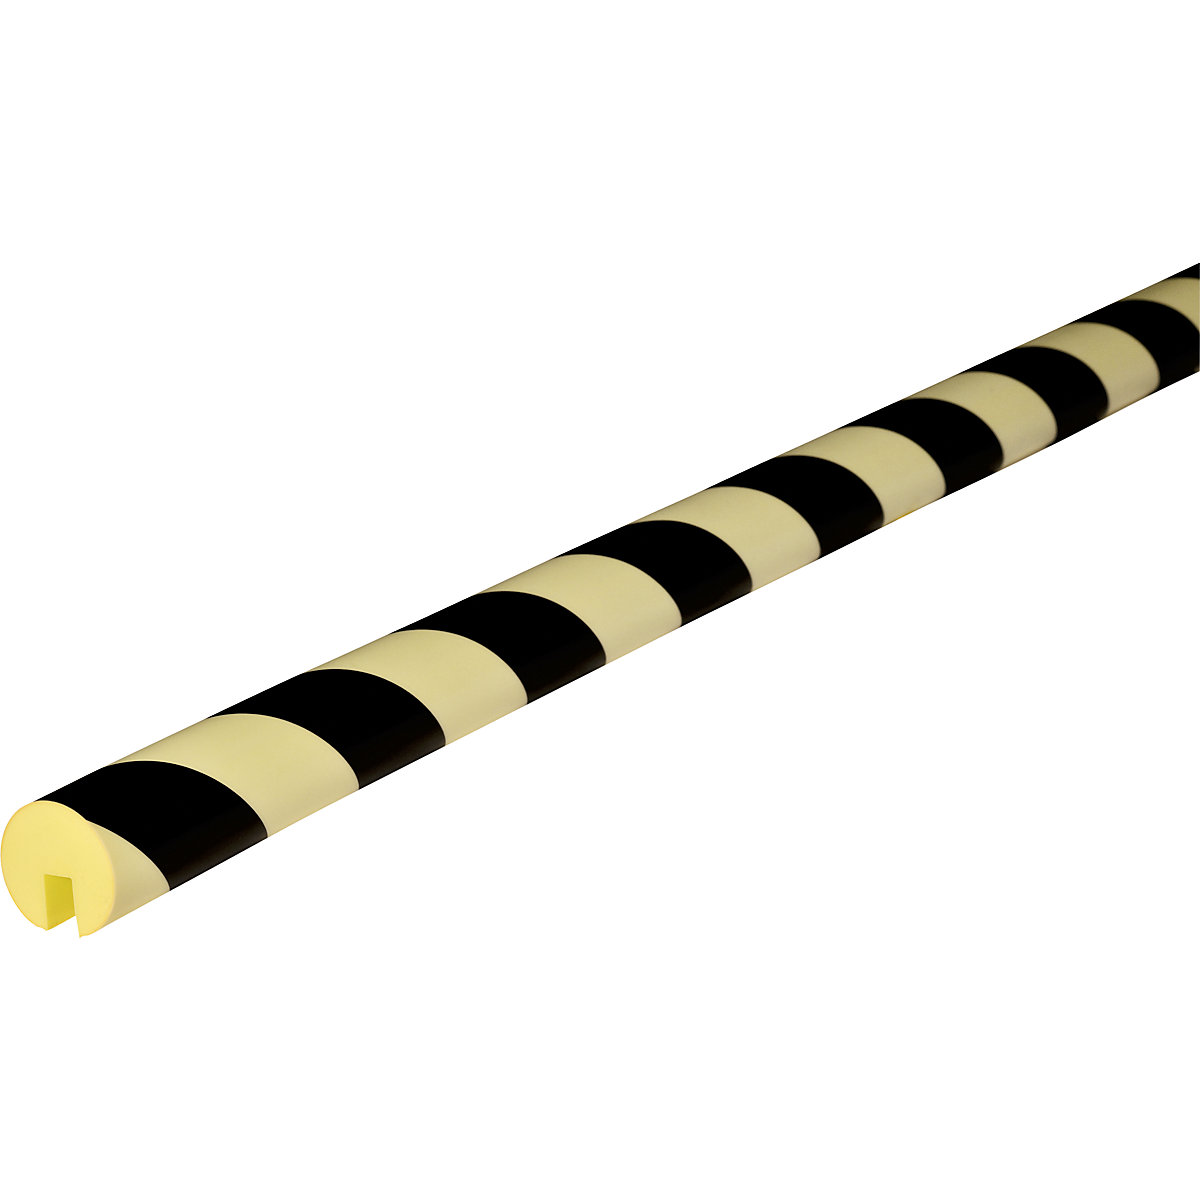 Knuffi®-randbescherming – SHG, type B, stuk van 1 m, zwart/lang nalichtend-18